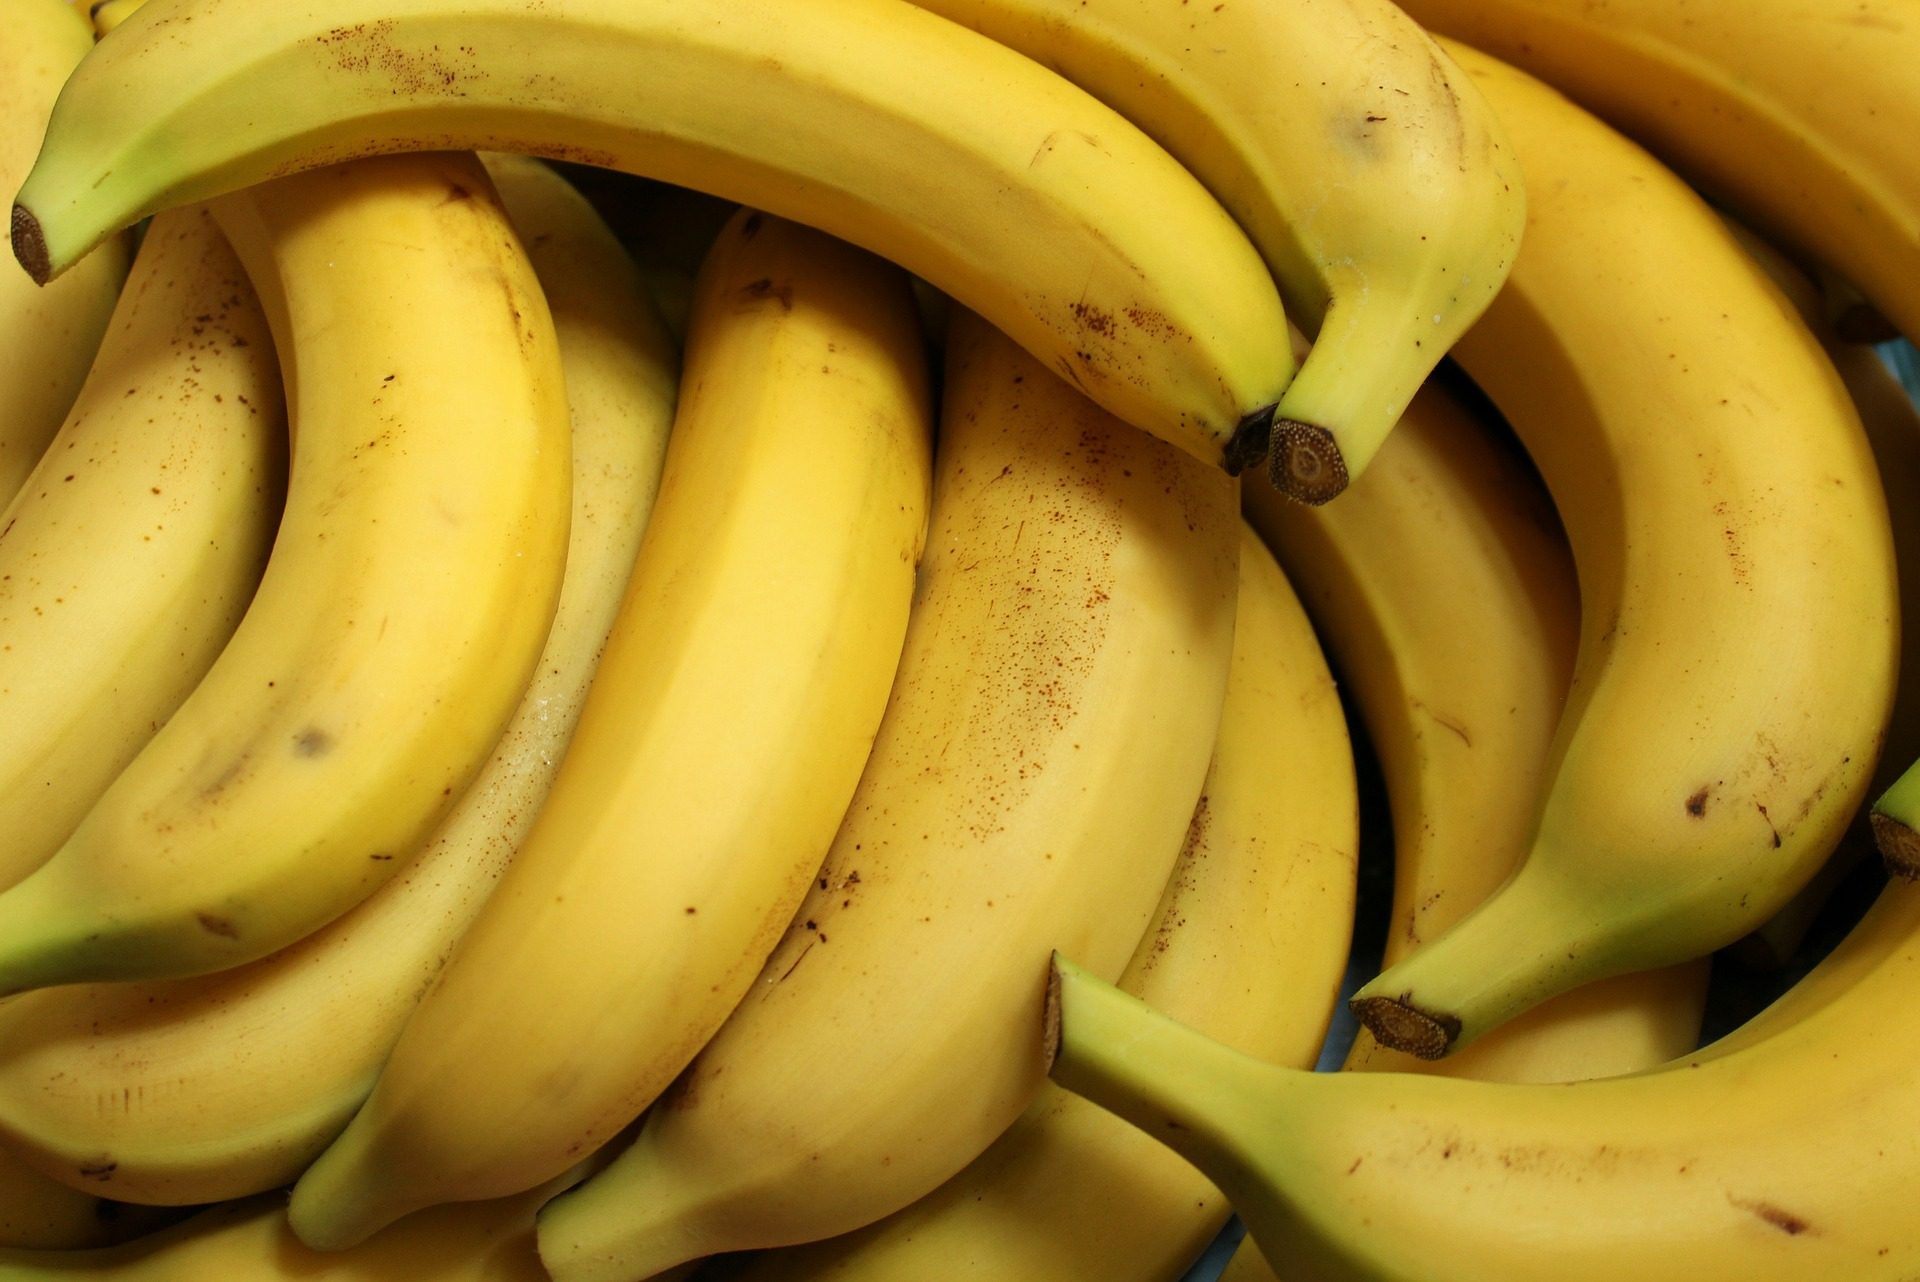 PJ apreende 375 quilos de cocaína escondida em contentor de bananas